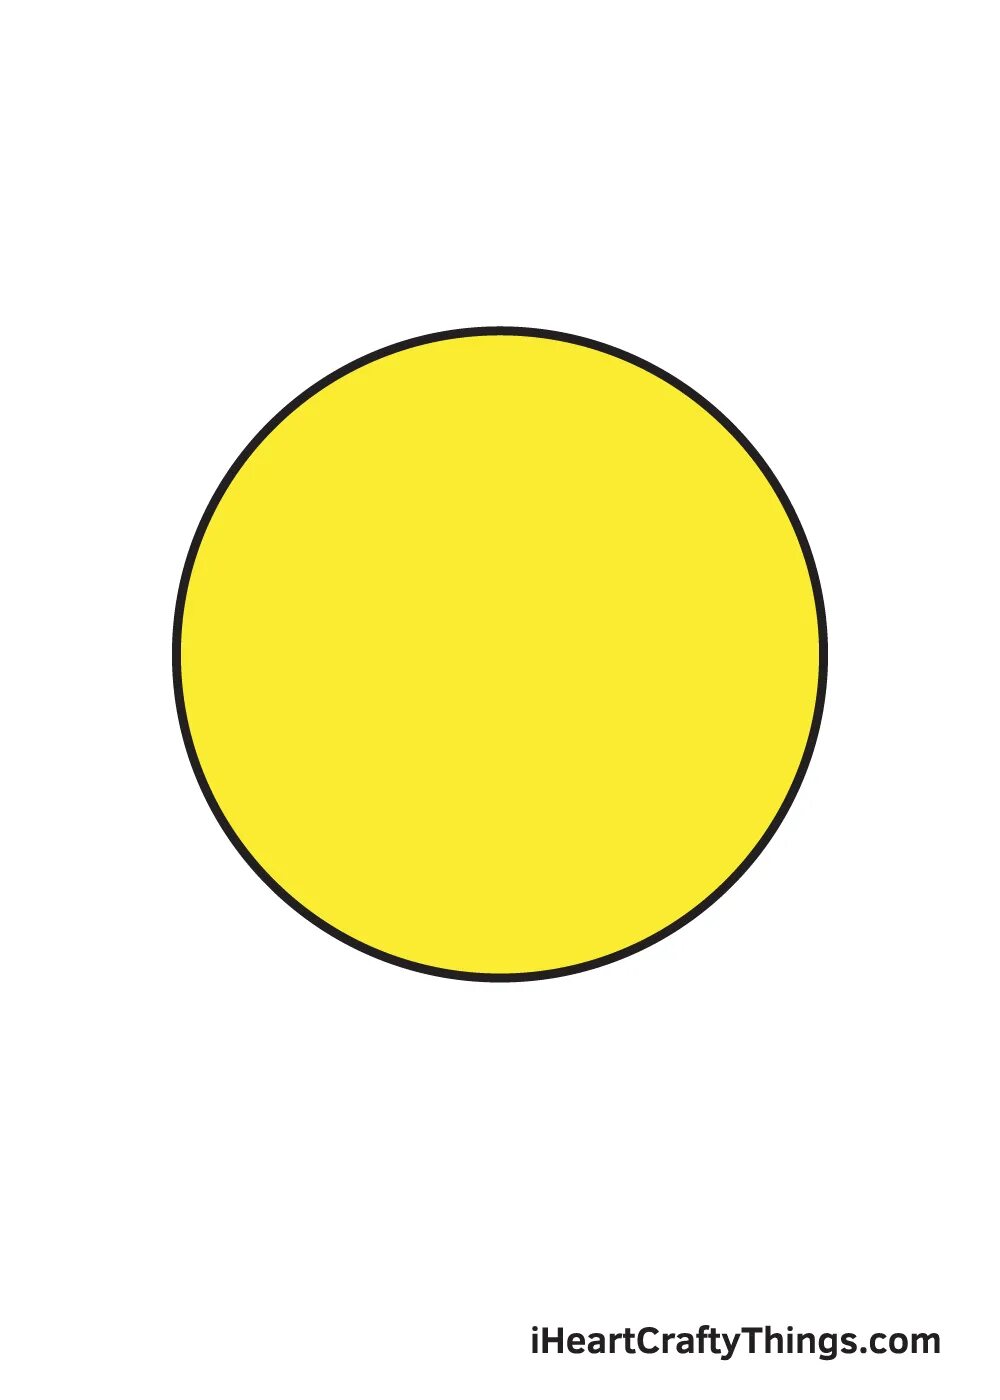 Желтые кружочки. Кружочки желтого цвета. Круг желтого цвета для детей. Цветной круг желтый.